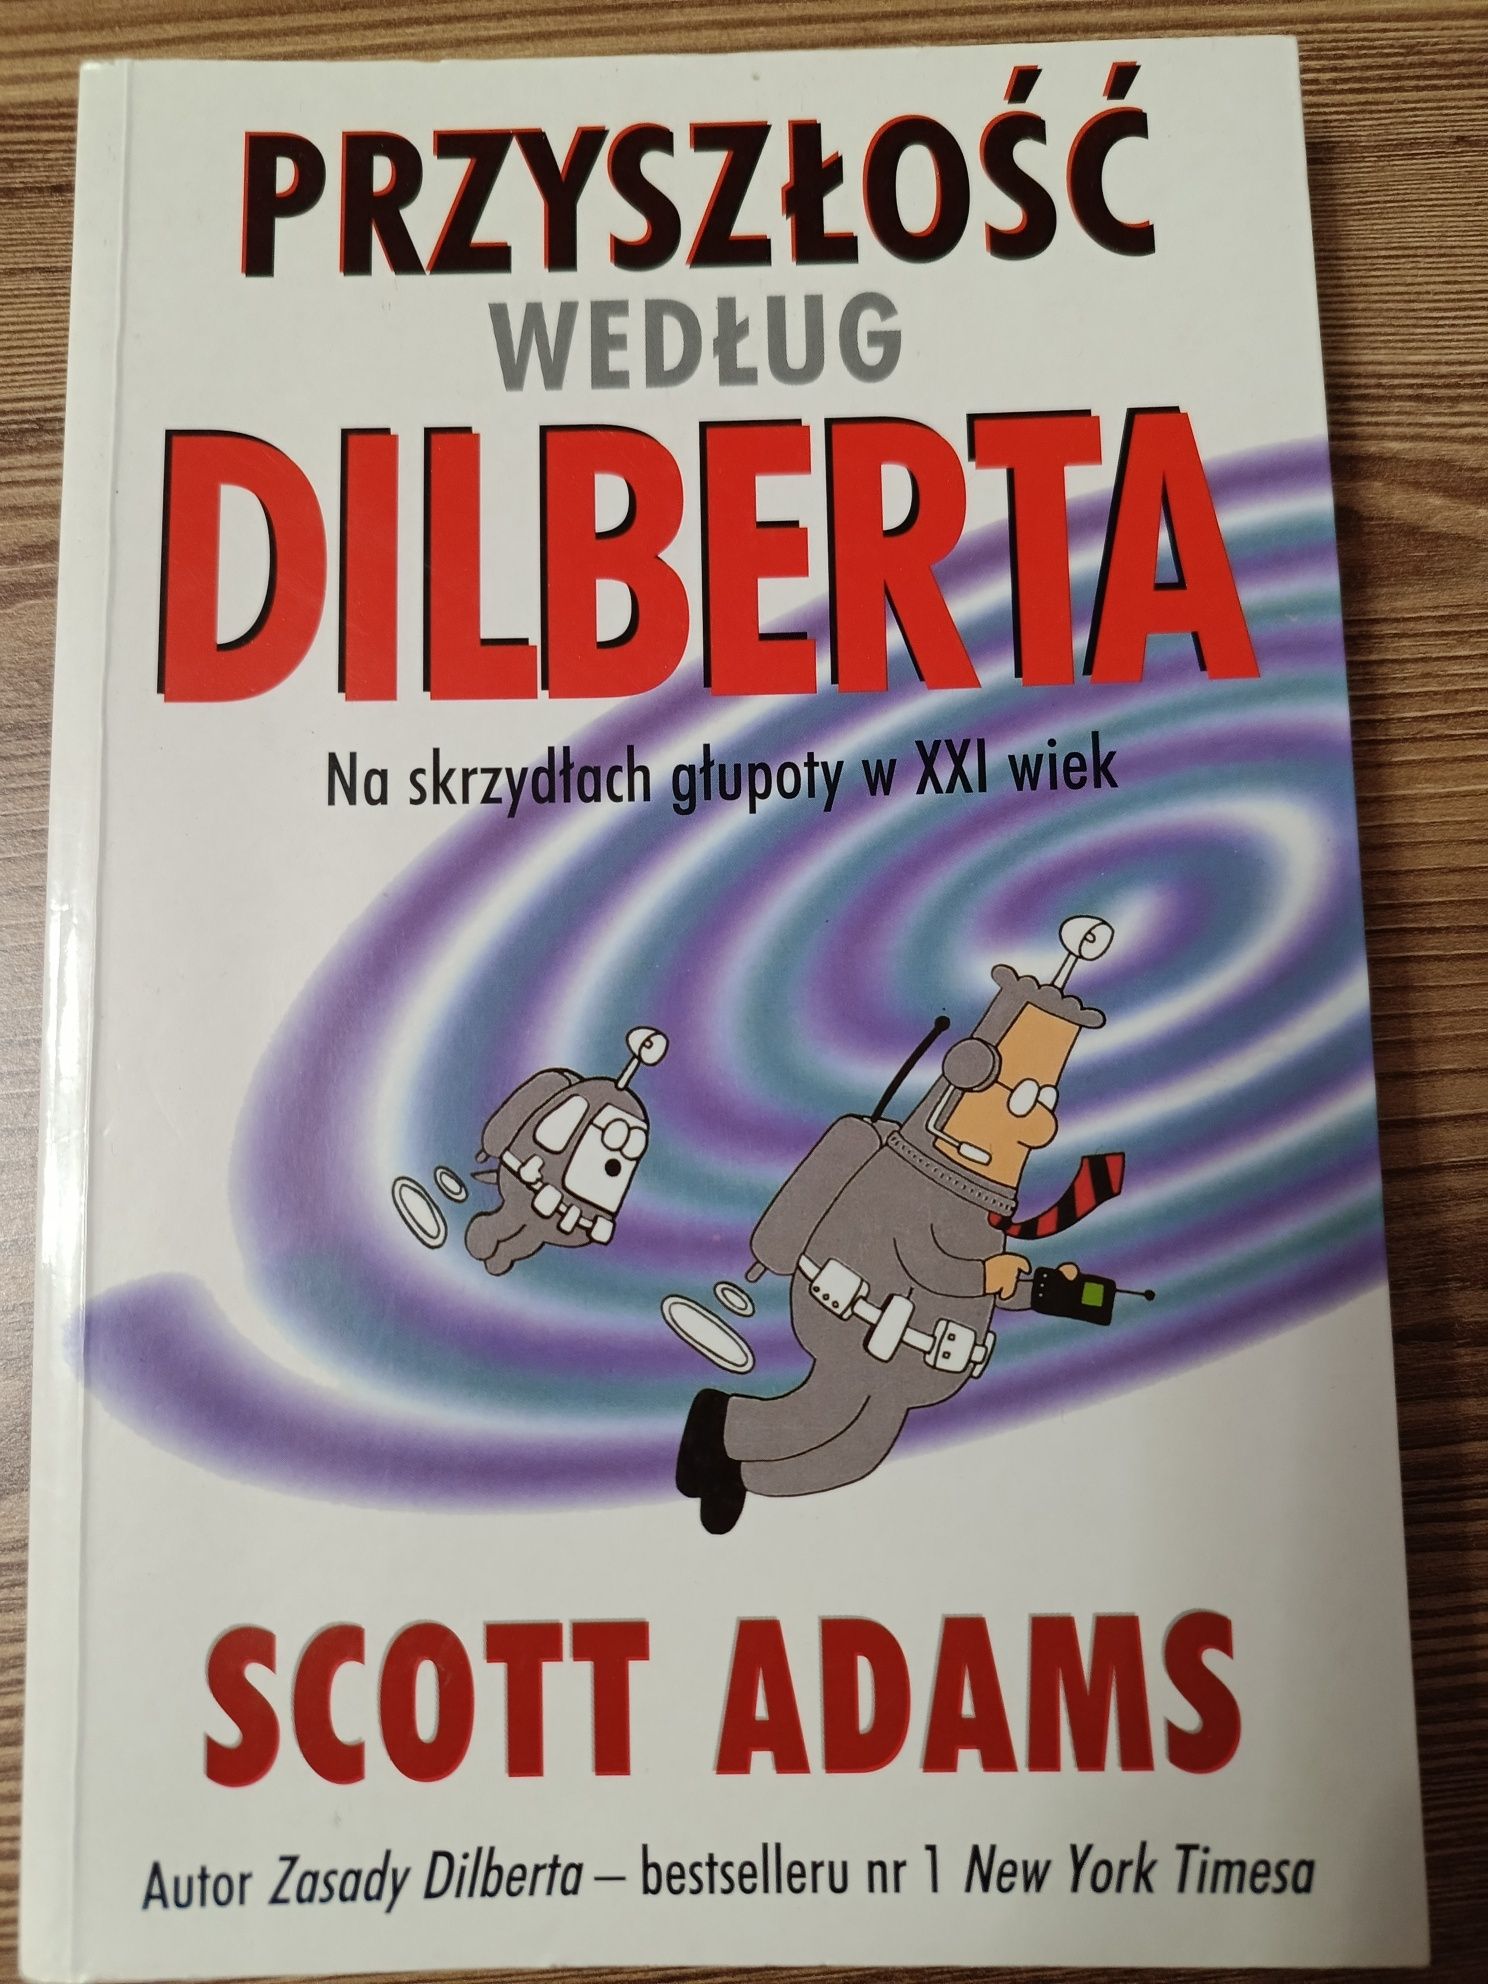 Przyszłość według Dilberta. Scott Adams